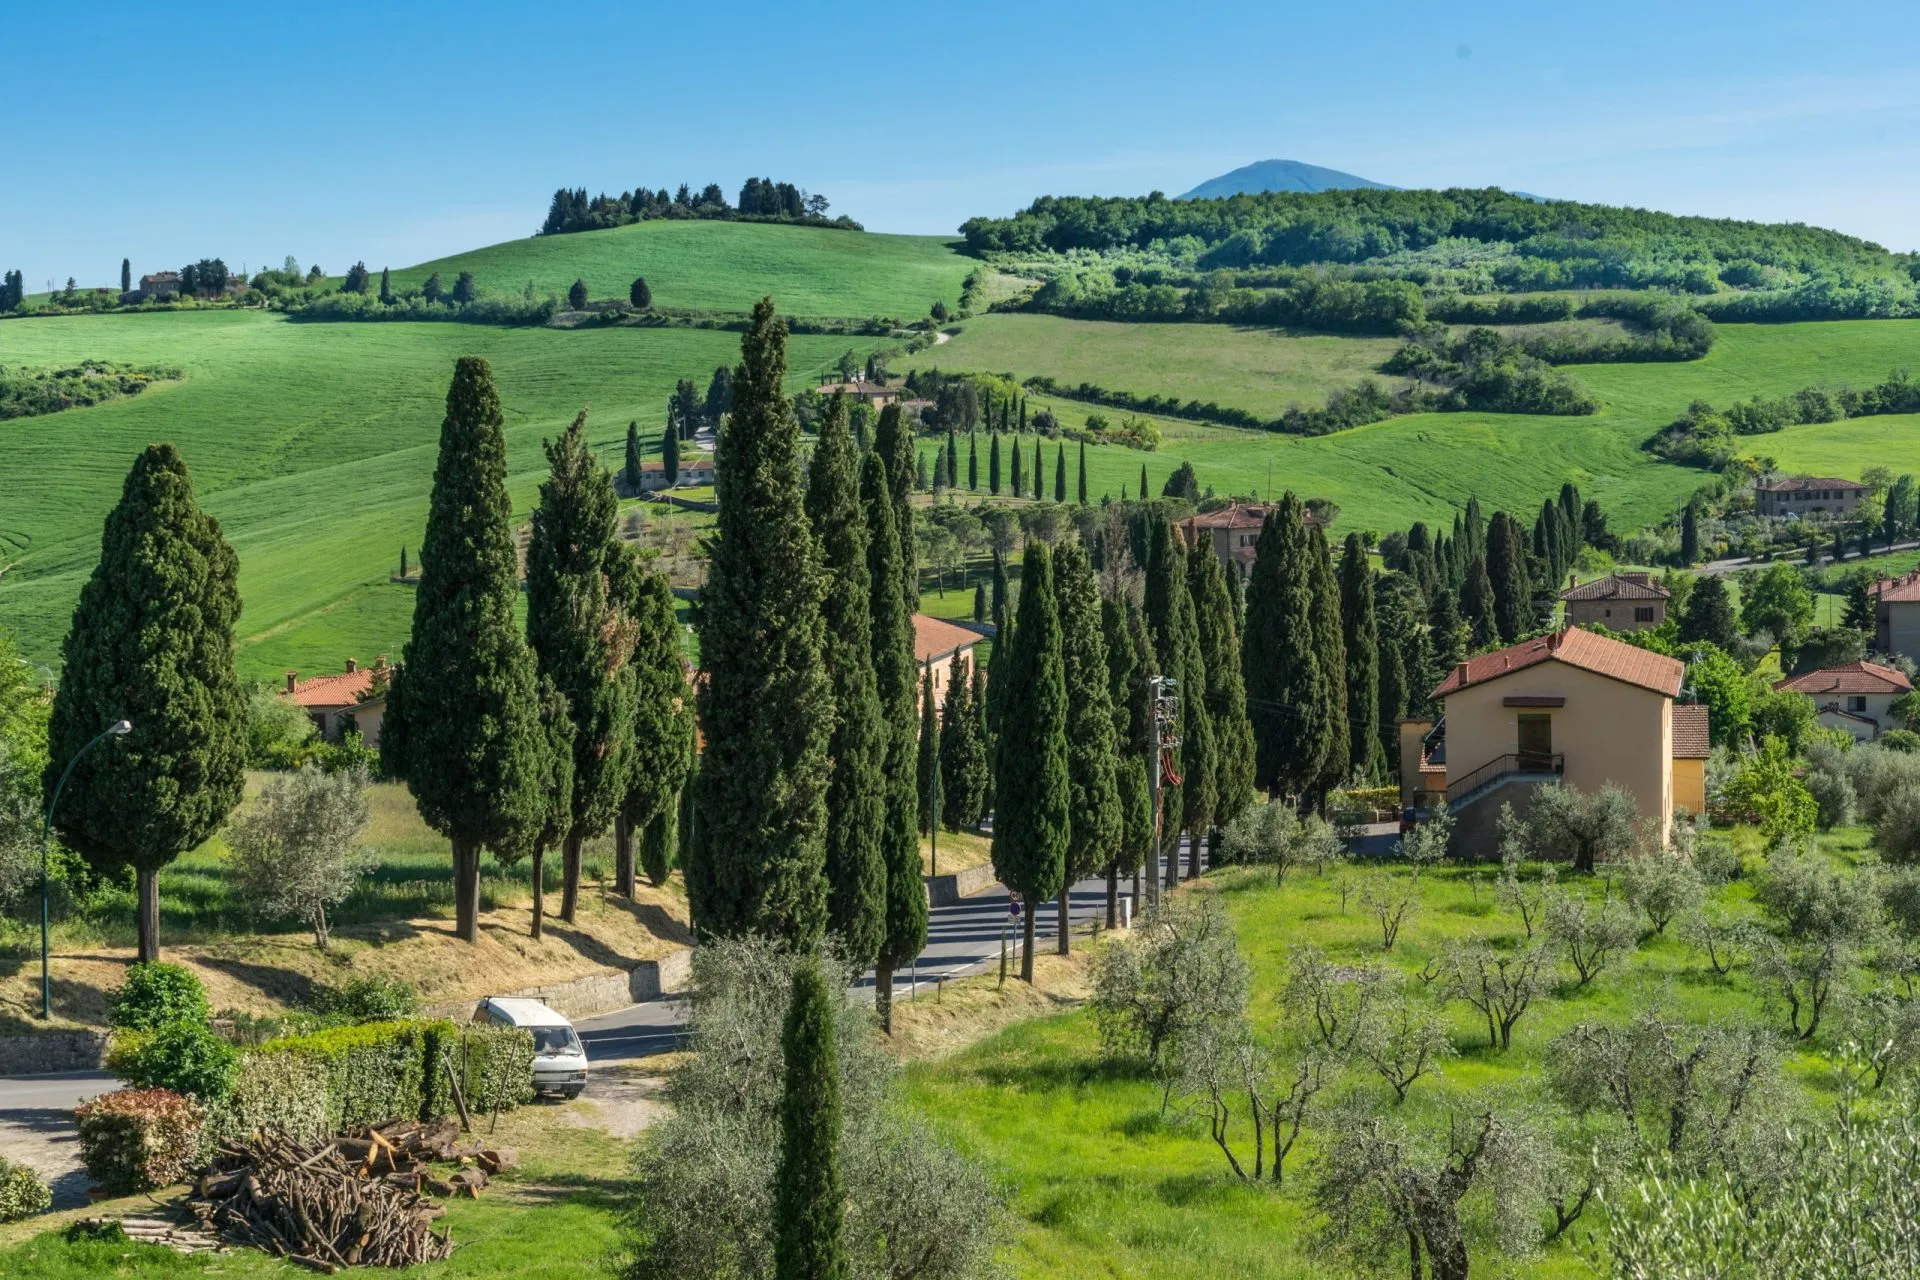 Montichiello in Tuscany